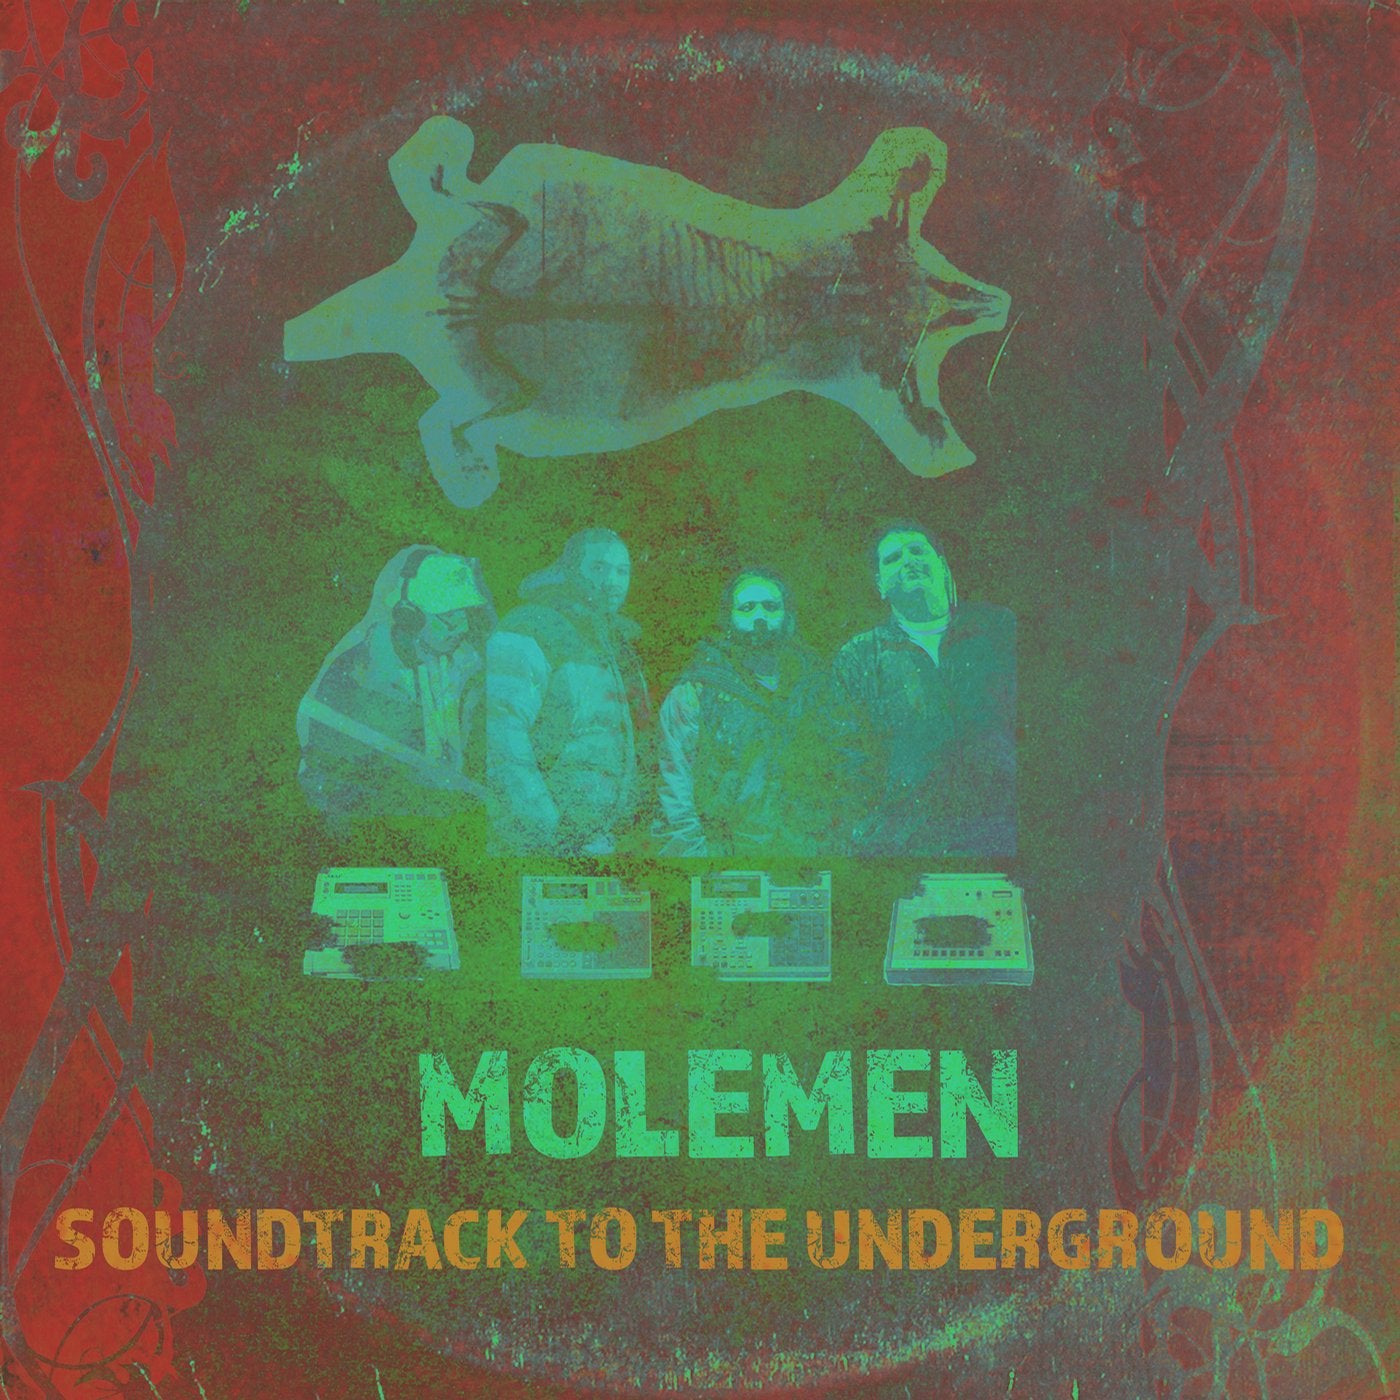 Soundtrack to the Underground